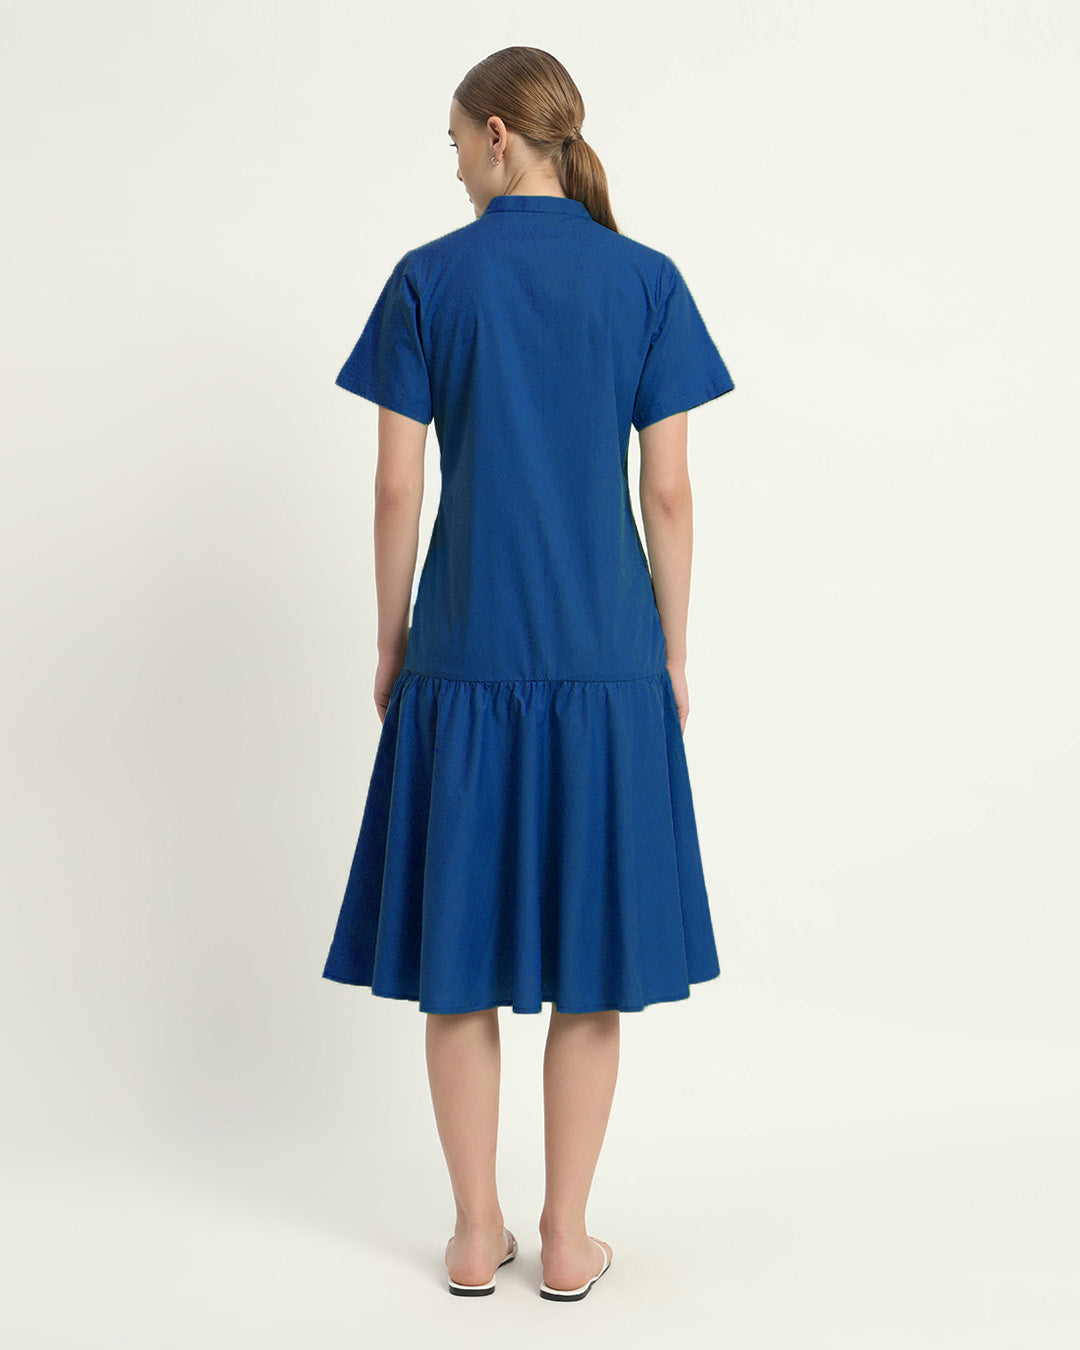 The Cobalt Melrose Cotton Dress